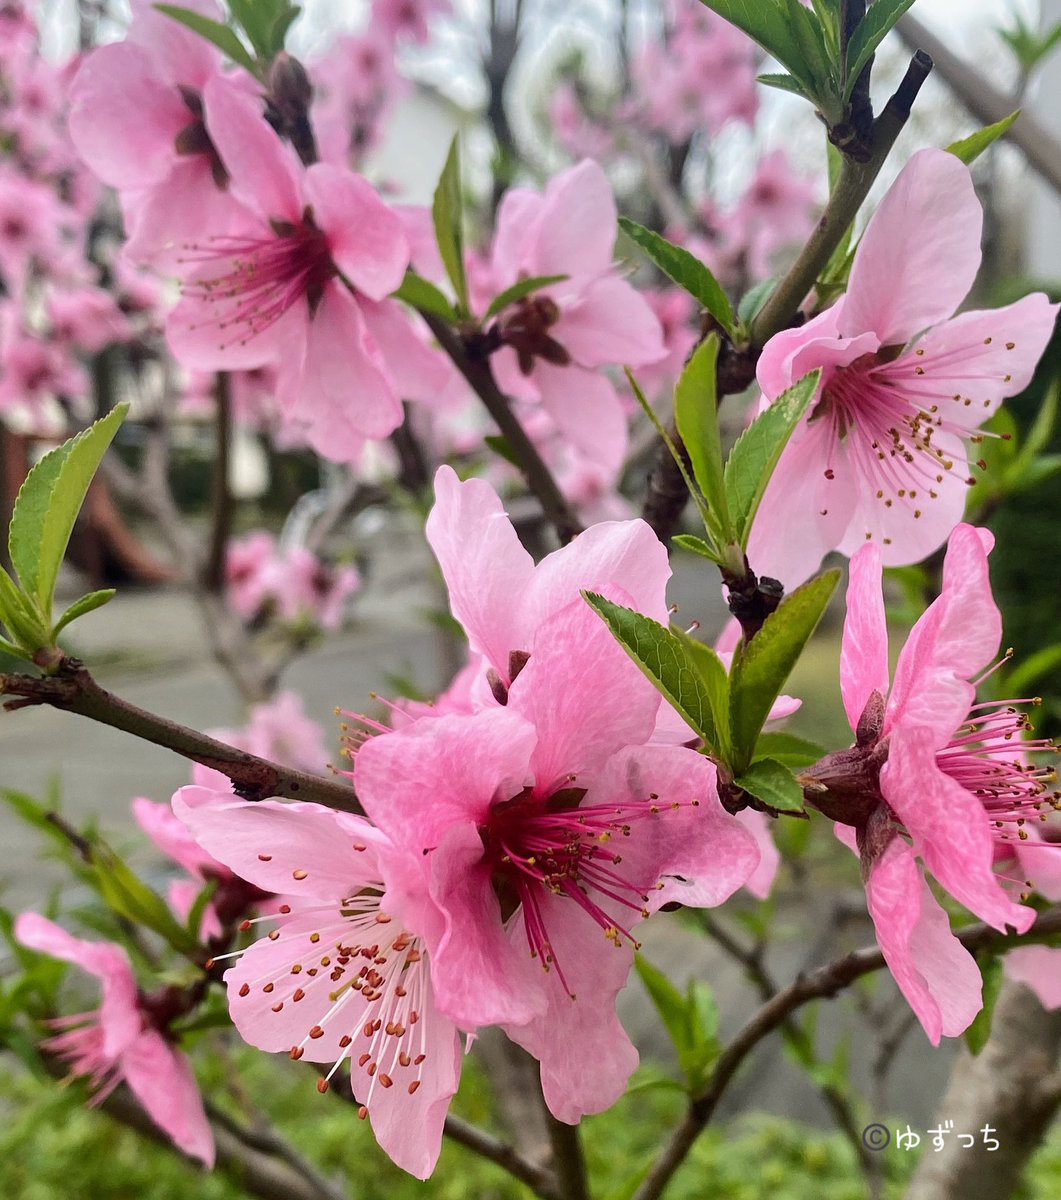 おはようございます☀️ 昨日の嵐🌀は何だったのでしょうか？ ただ、意外と桜はもっているようで安心しました。写真は撮れなかったので、少し前に撮った桃の花を置いておきます。 今日も口角を上げていきましょう🍀 #おはDAO #TLを花でいっぱいにしょう